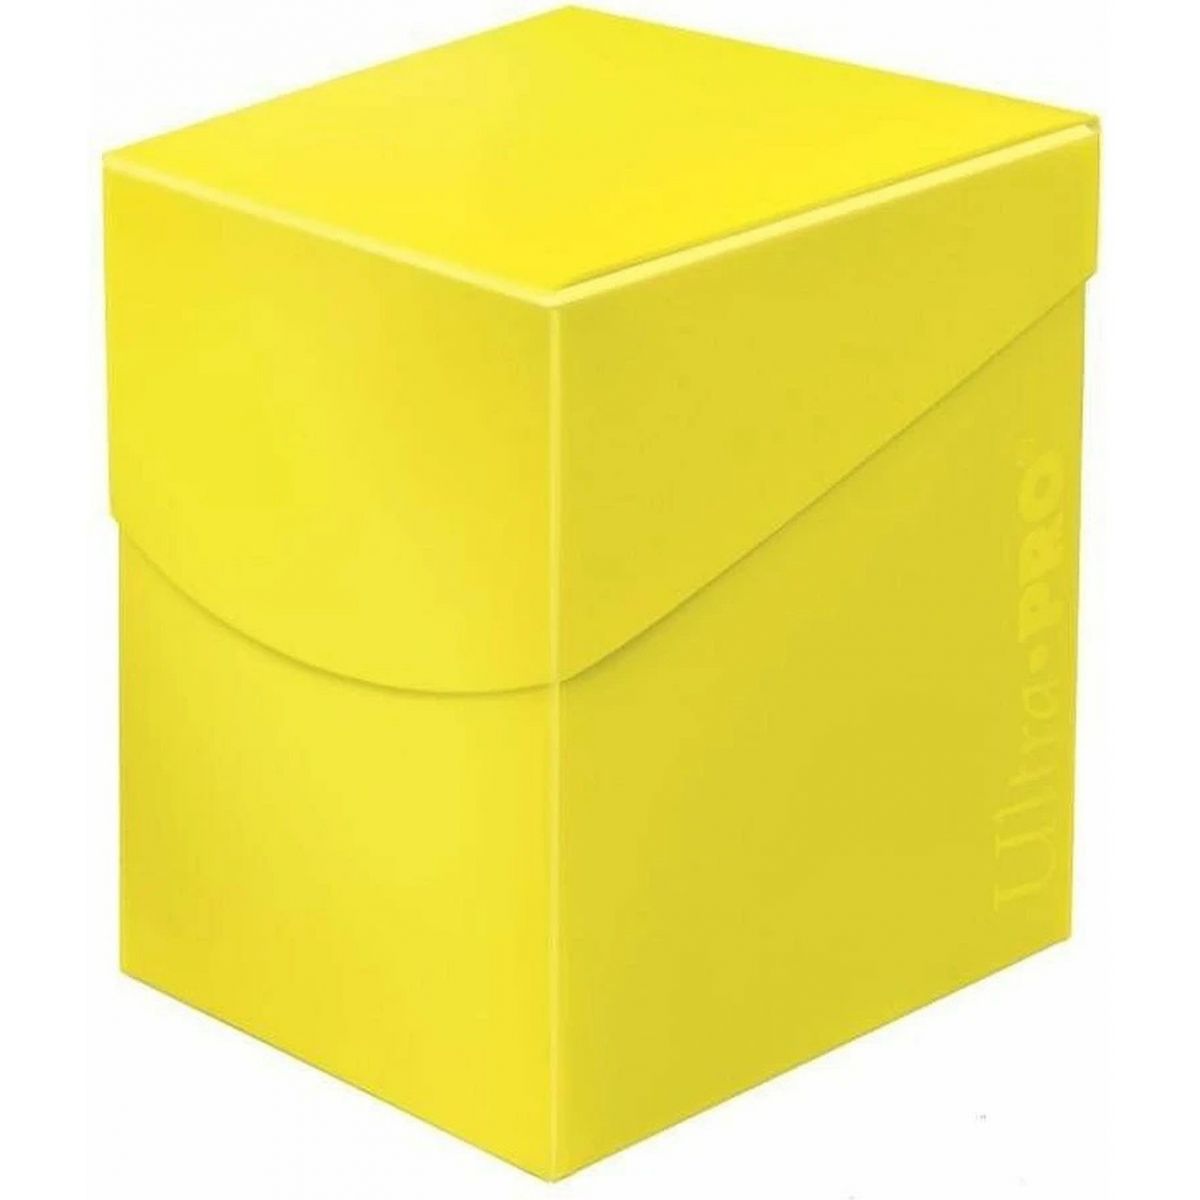 Deckbox - Eclipse PRO 100+ Zitronengelb